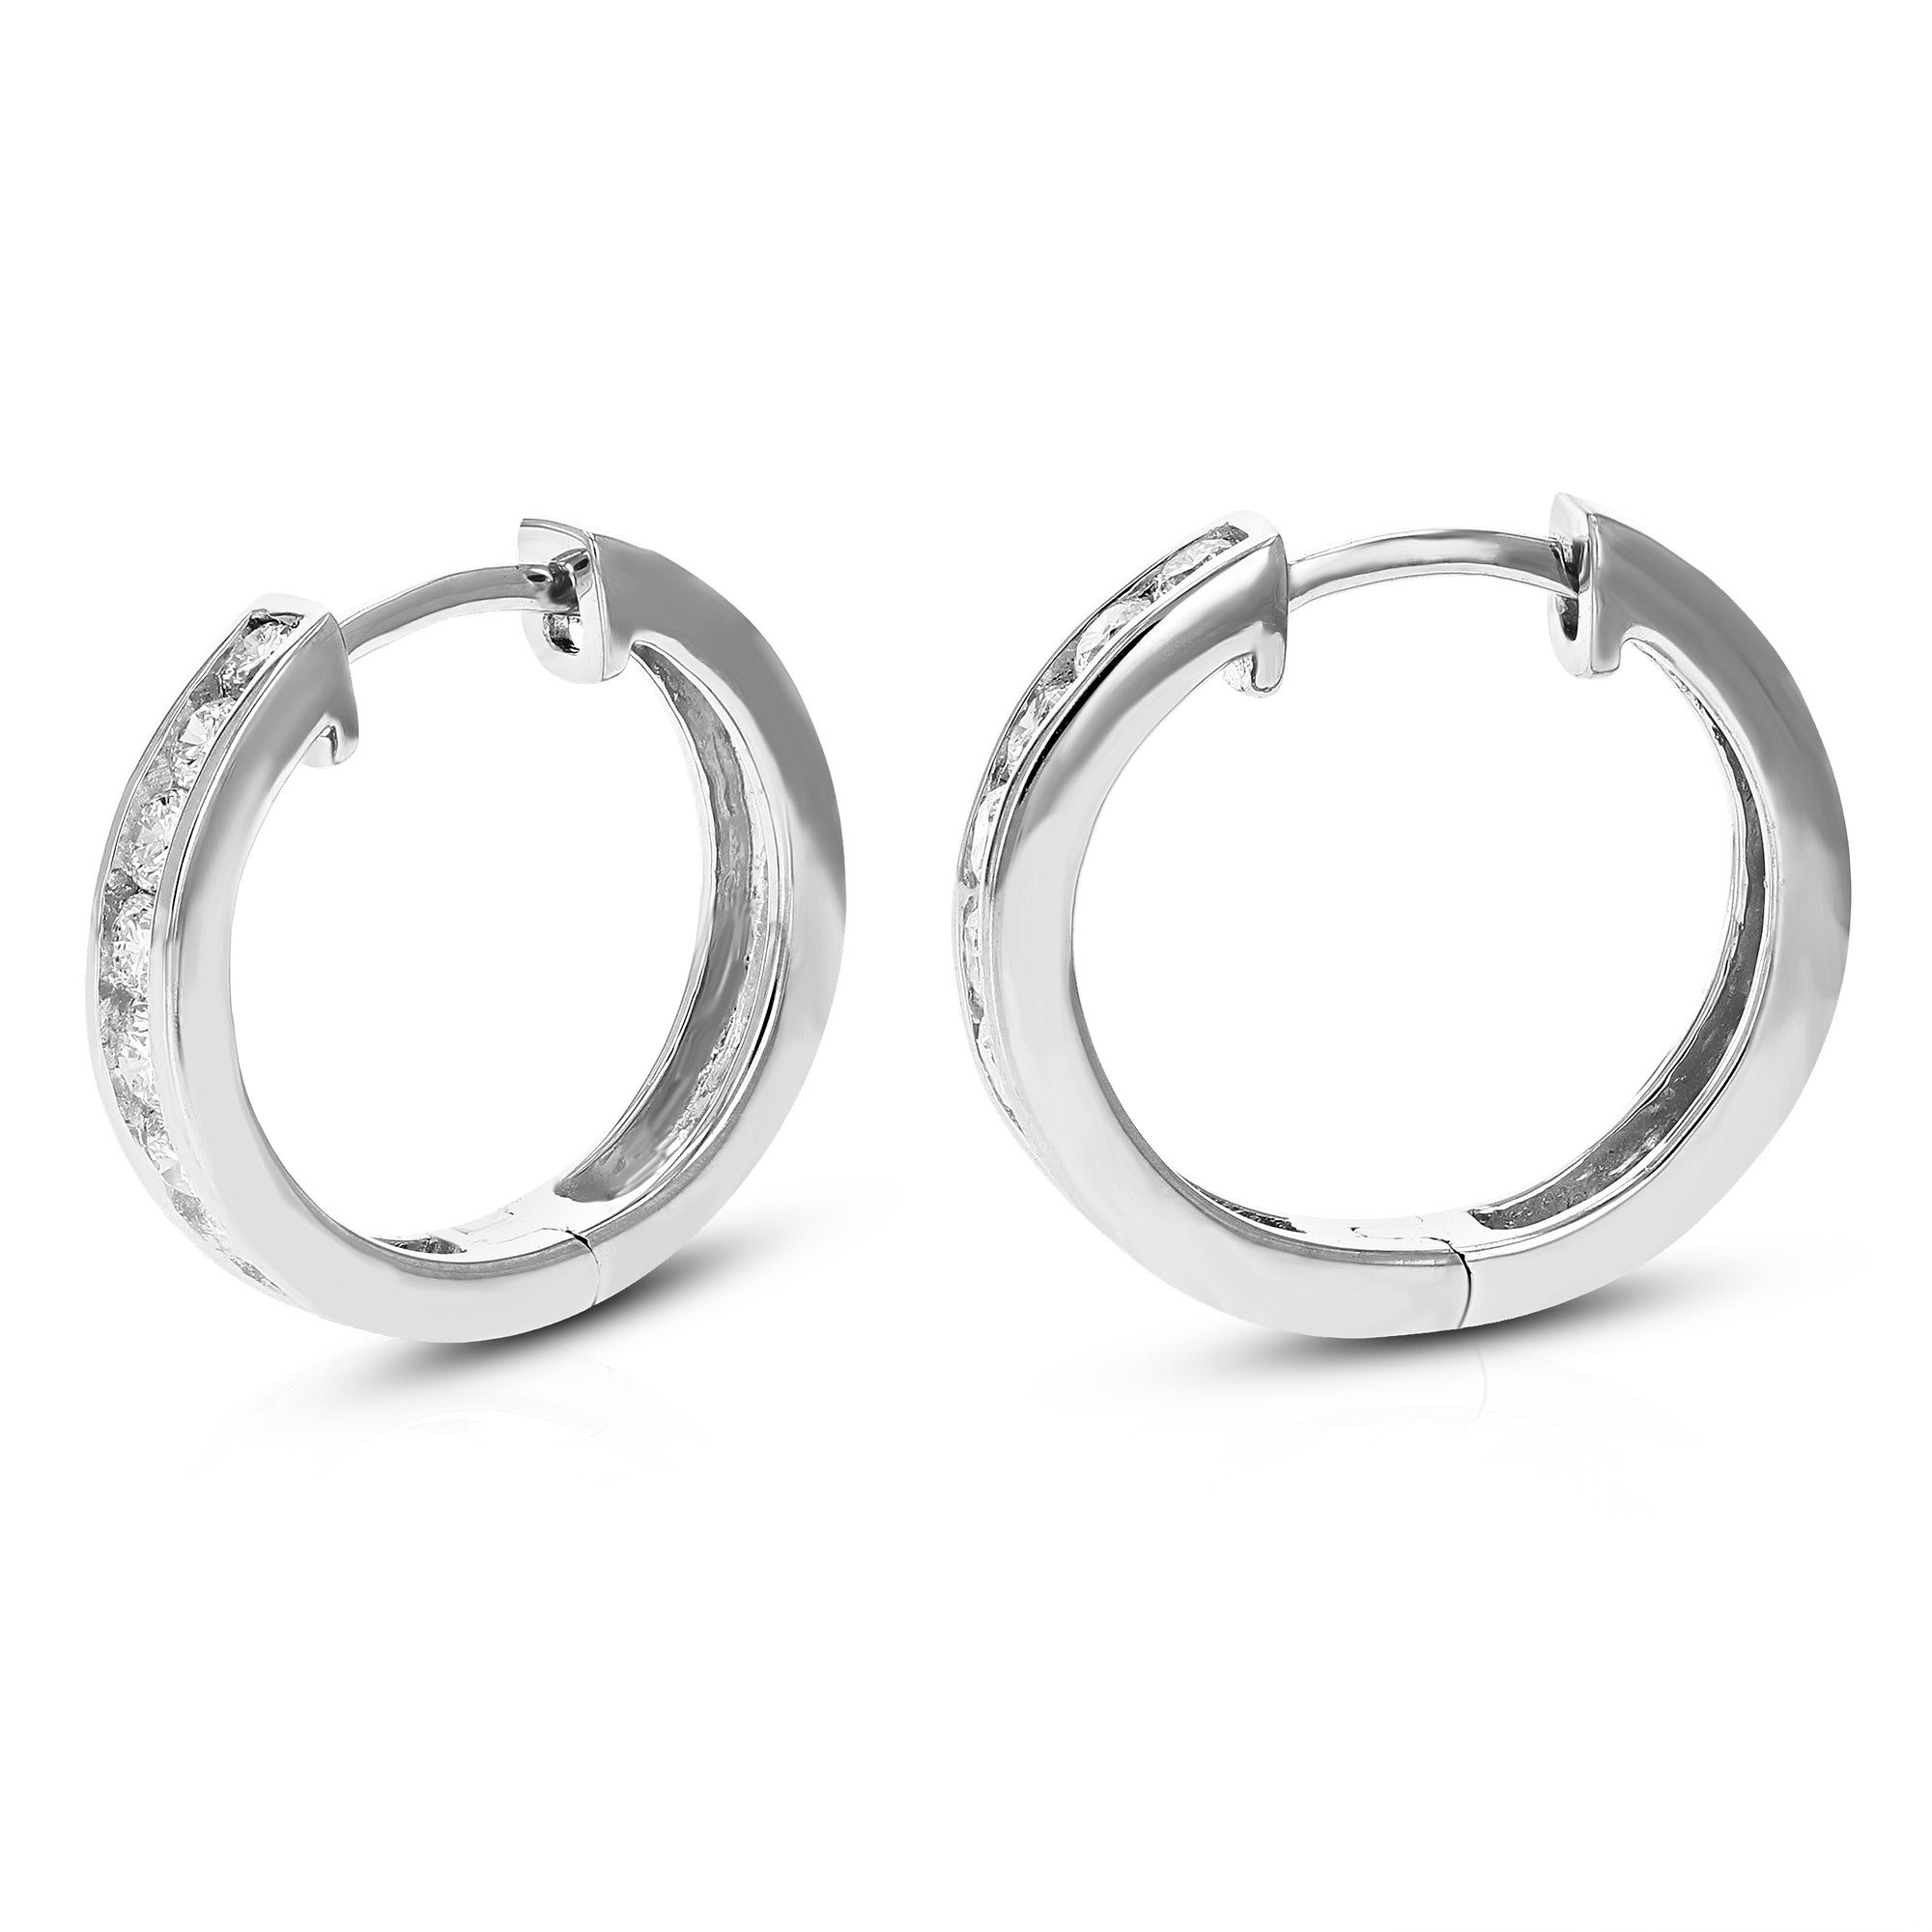 3/4 cttw Diamond Hoop Earrings for Women, Round Lab Grown Diamond Earrings in .925 Sterling Silver, Channel Setting, 2/3 Inch